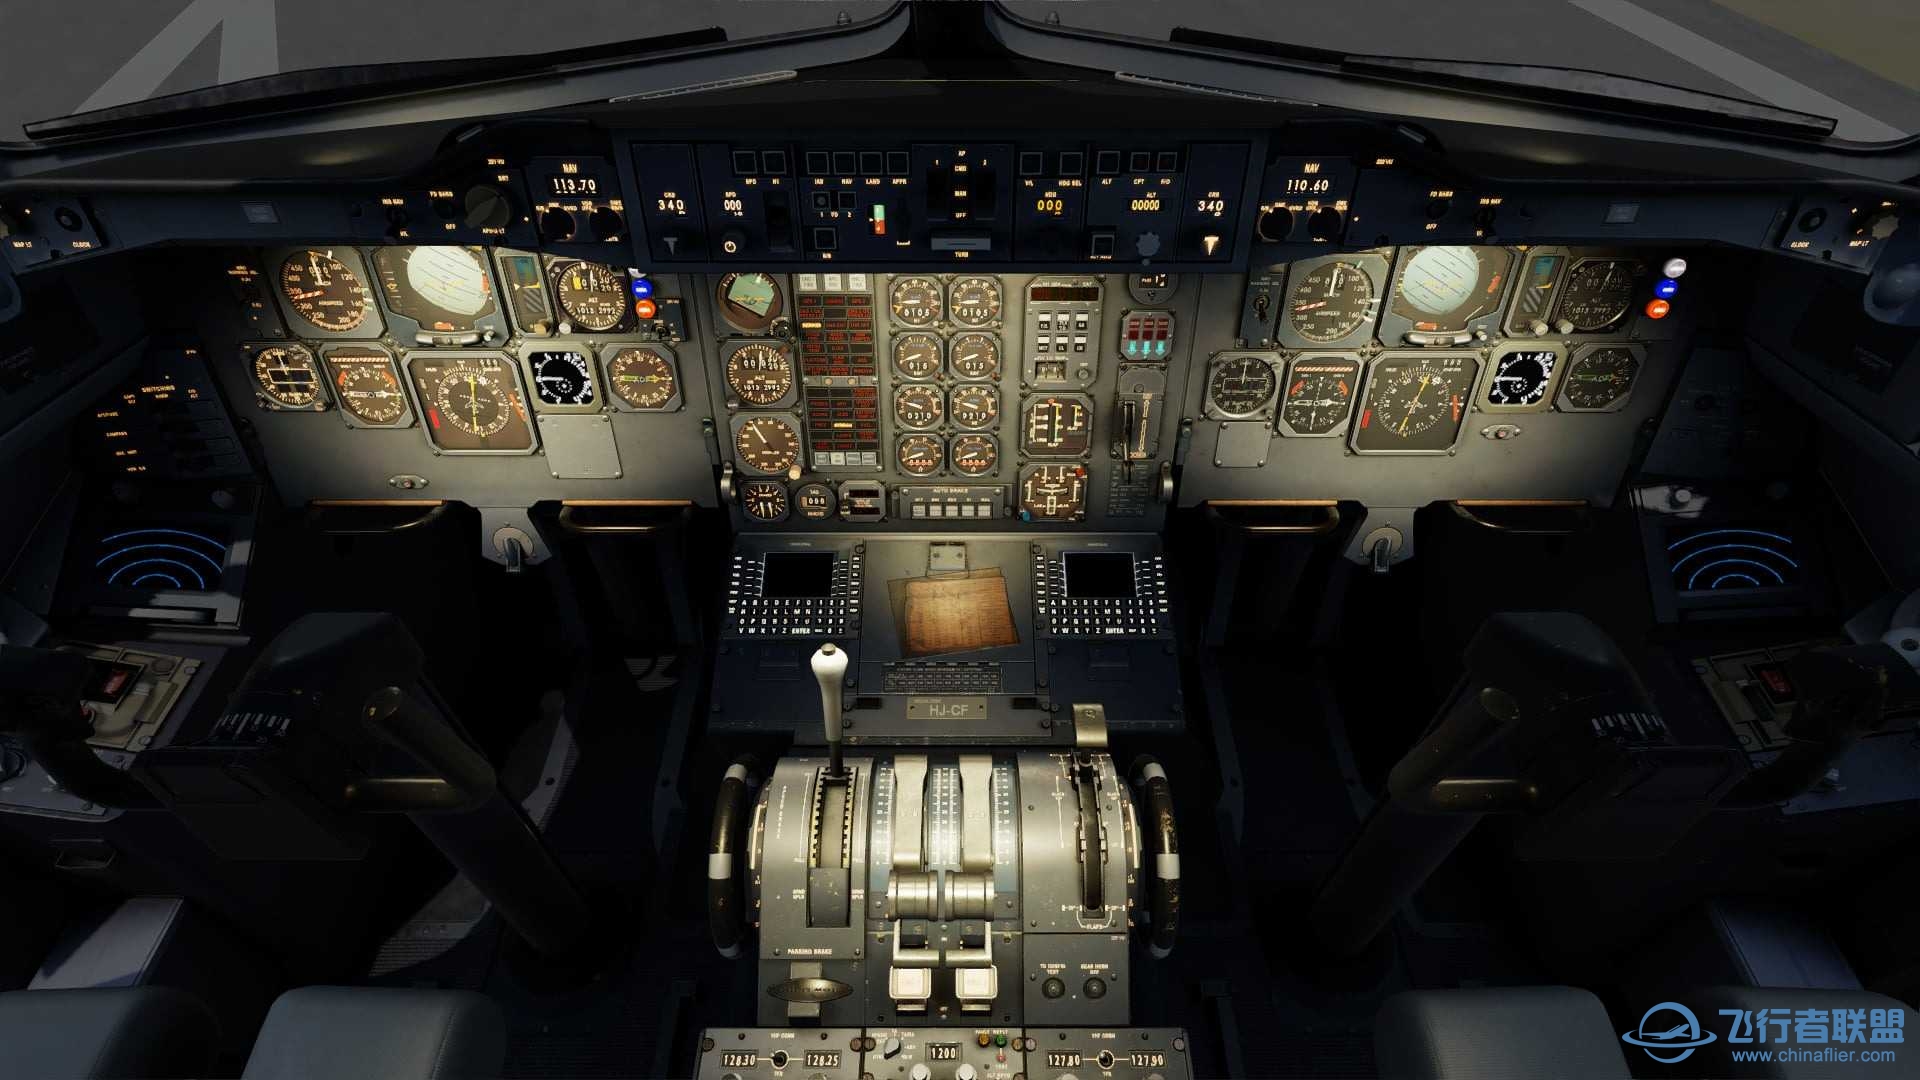 更多关于Just Flight’s A300的详细信息-1001 